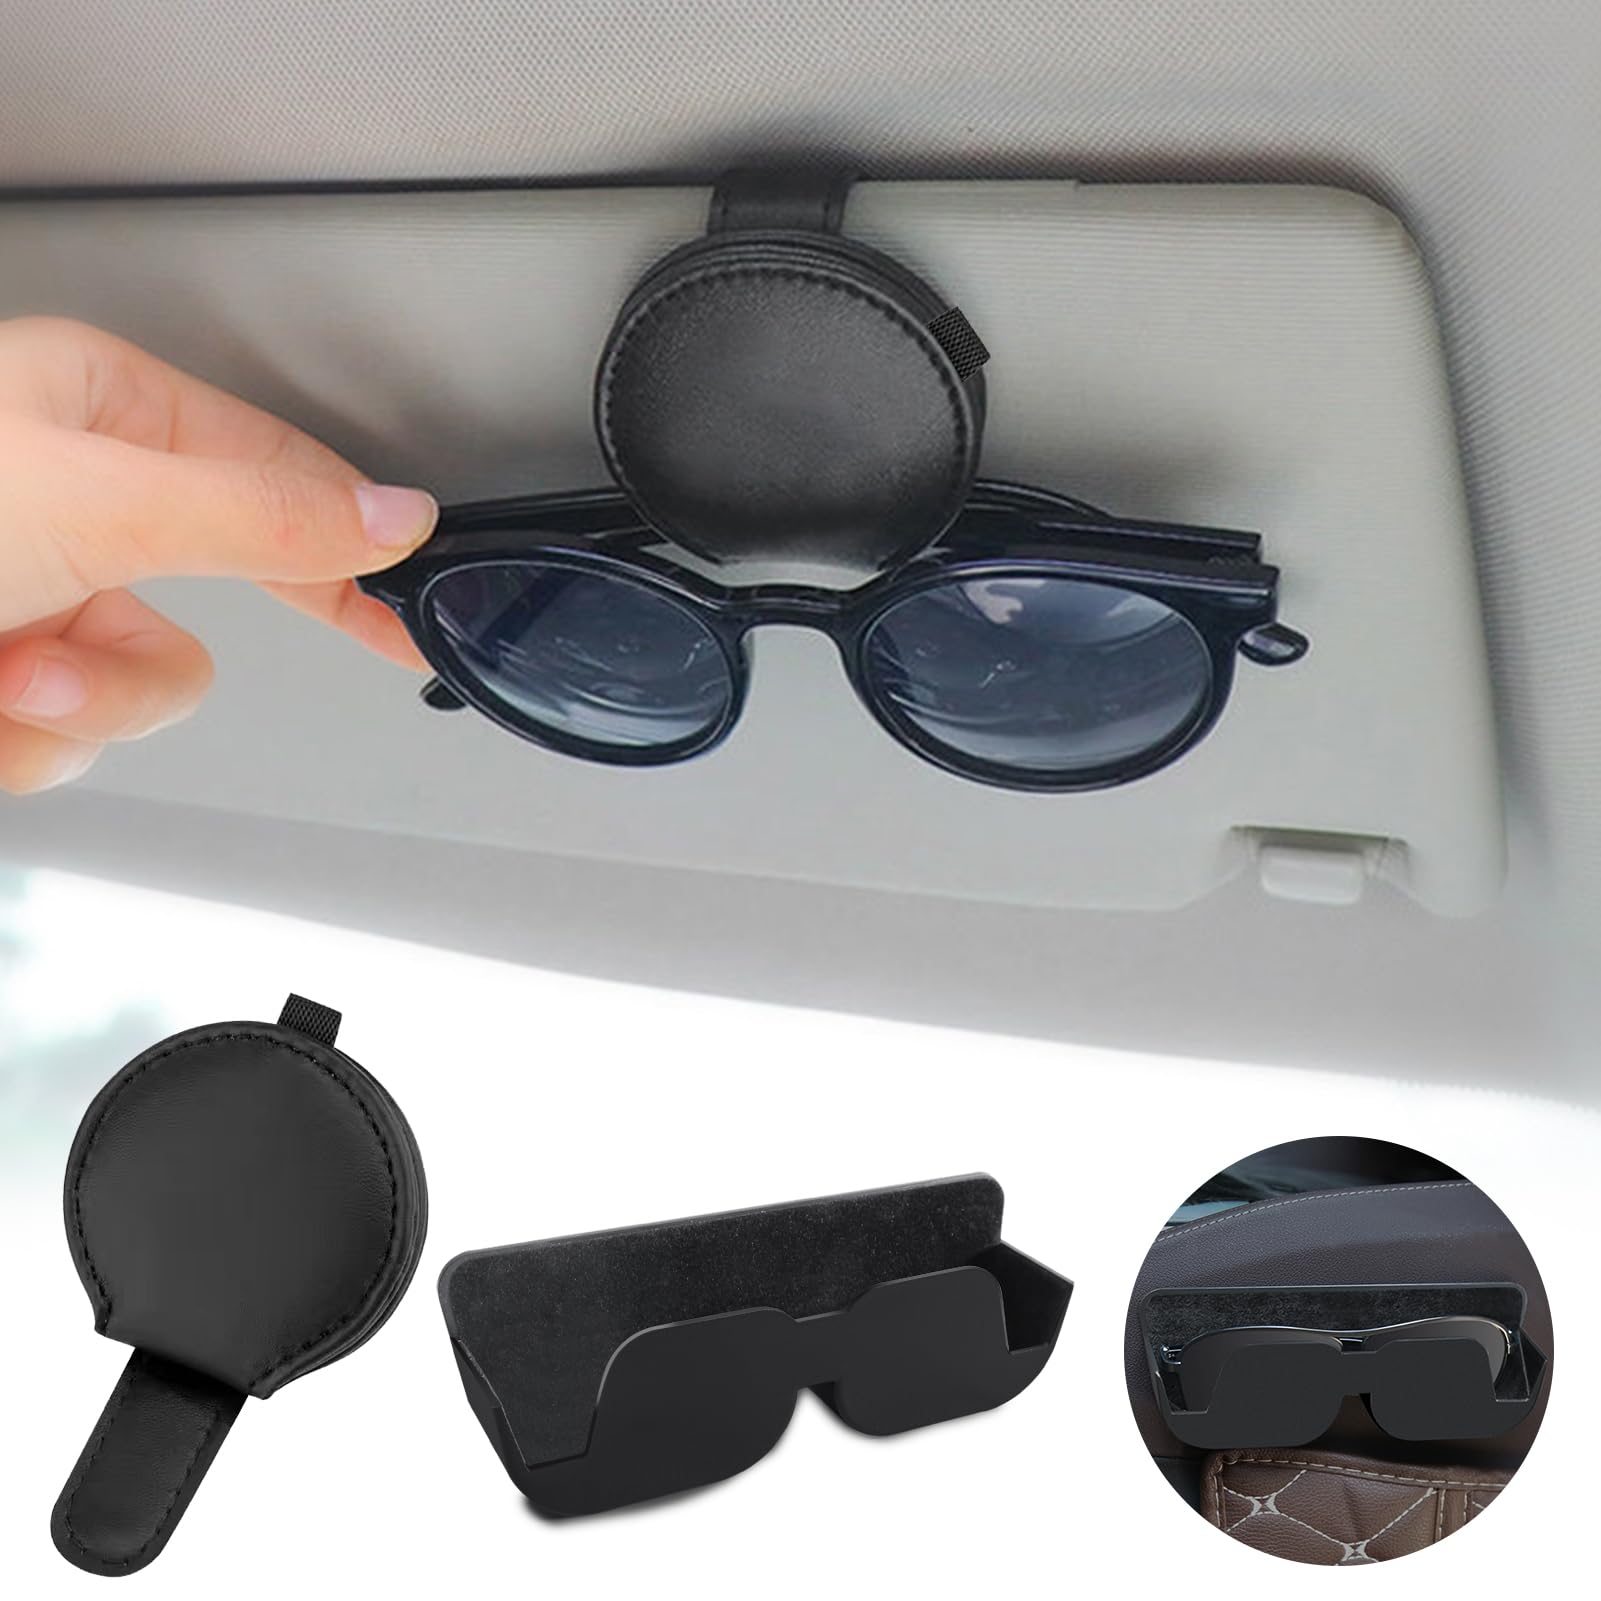 2 Stück Auto Brillenablage, KFZ Sonnenbrillen Aufbewahrung für Auto Sonnenblende, Selbstklebend Halterung mit Filzpolsterung für Brillen, Magnetische Brillenhalter für Ticket, Auto Visier Zubehör von Silkwish